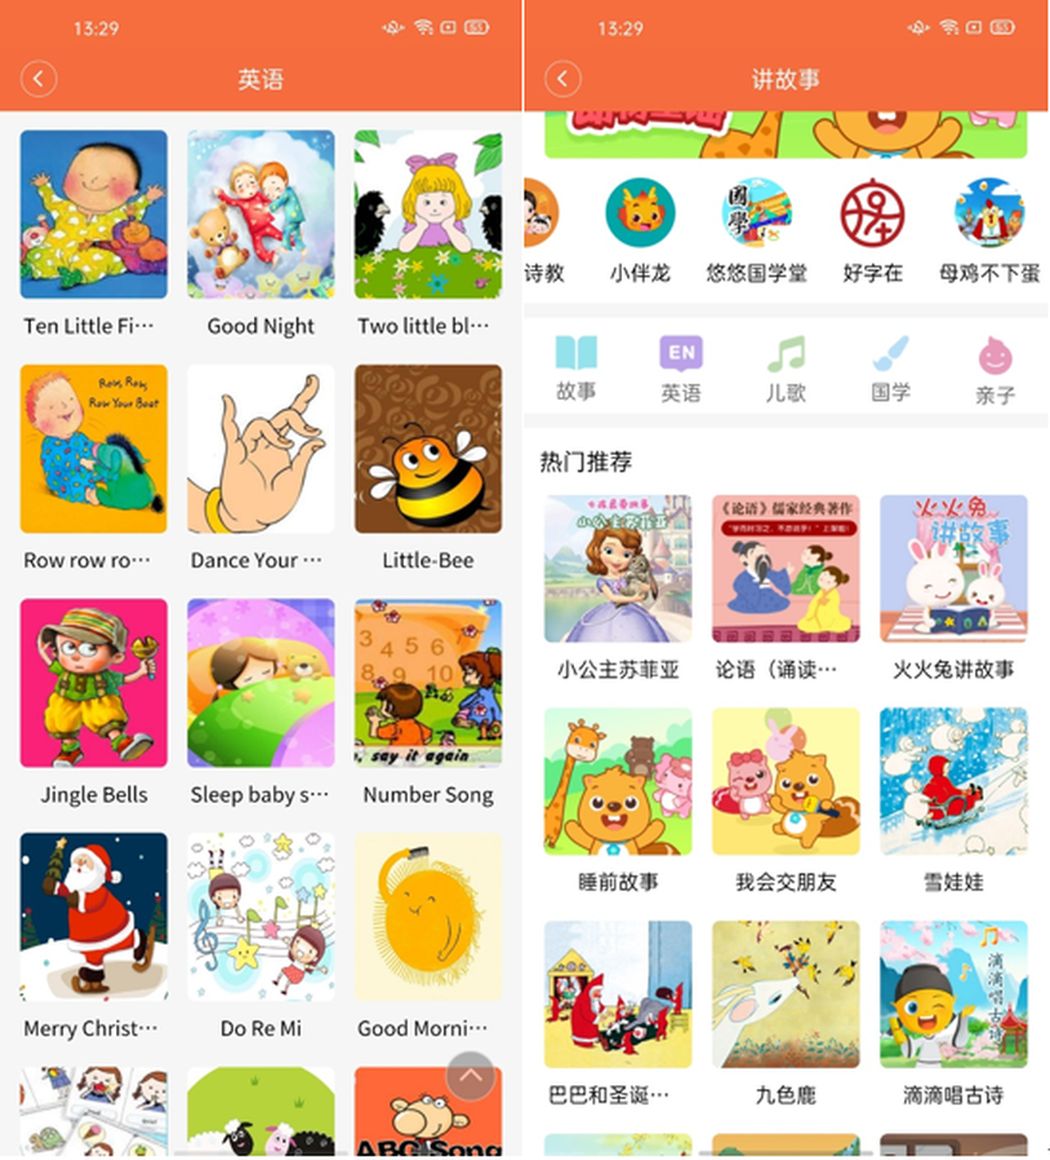 Thỏ Xiaomi 4 Đánh giá chuyên nghiệp: Đồng hồ thông minh dành cho trẻ em tốt nhất 2020